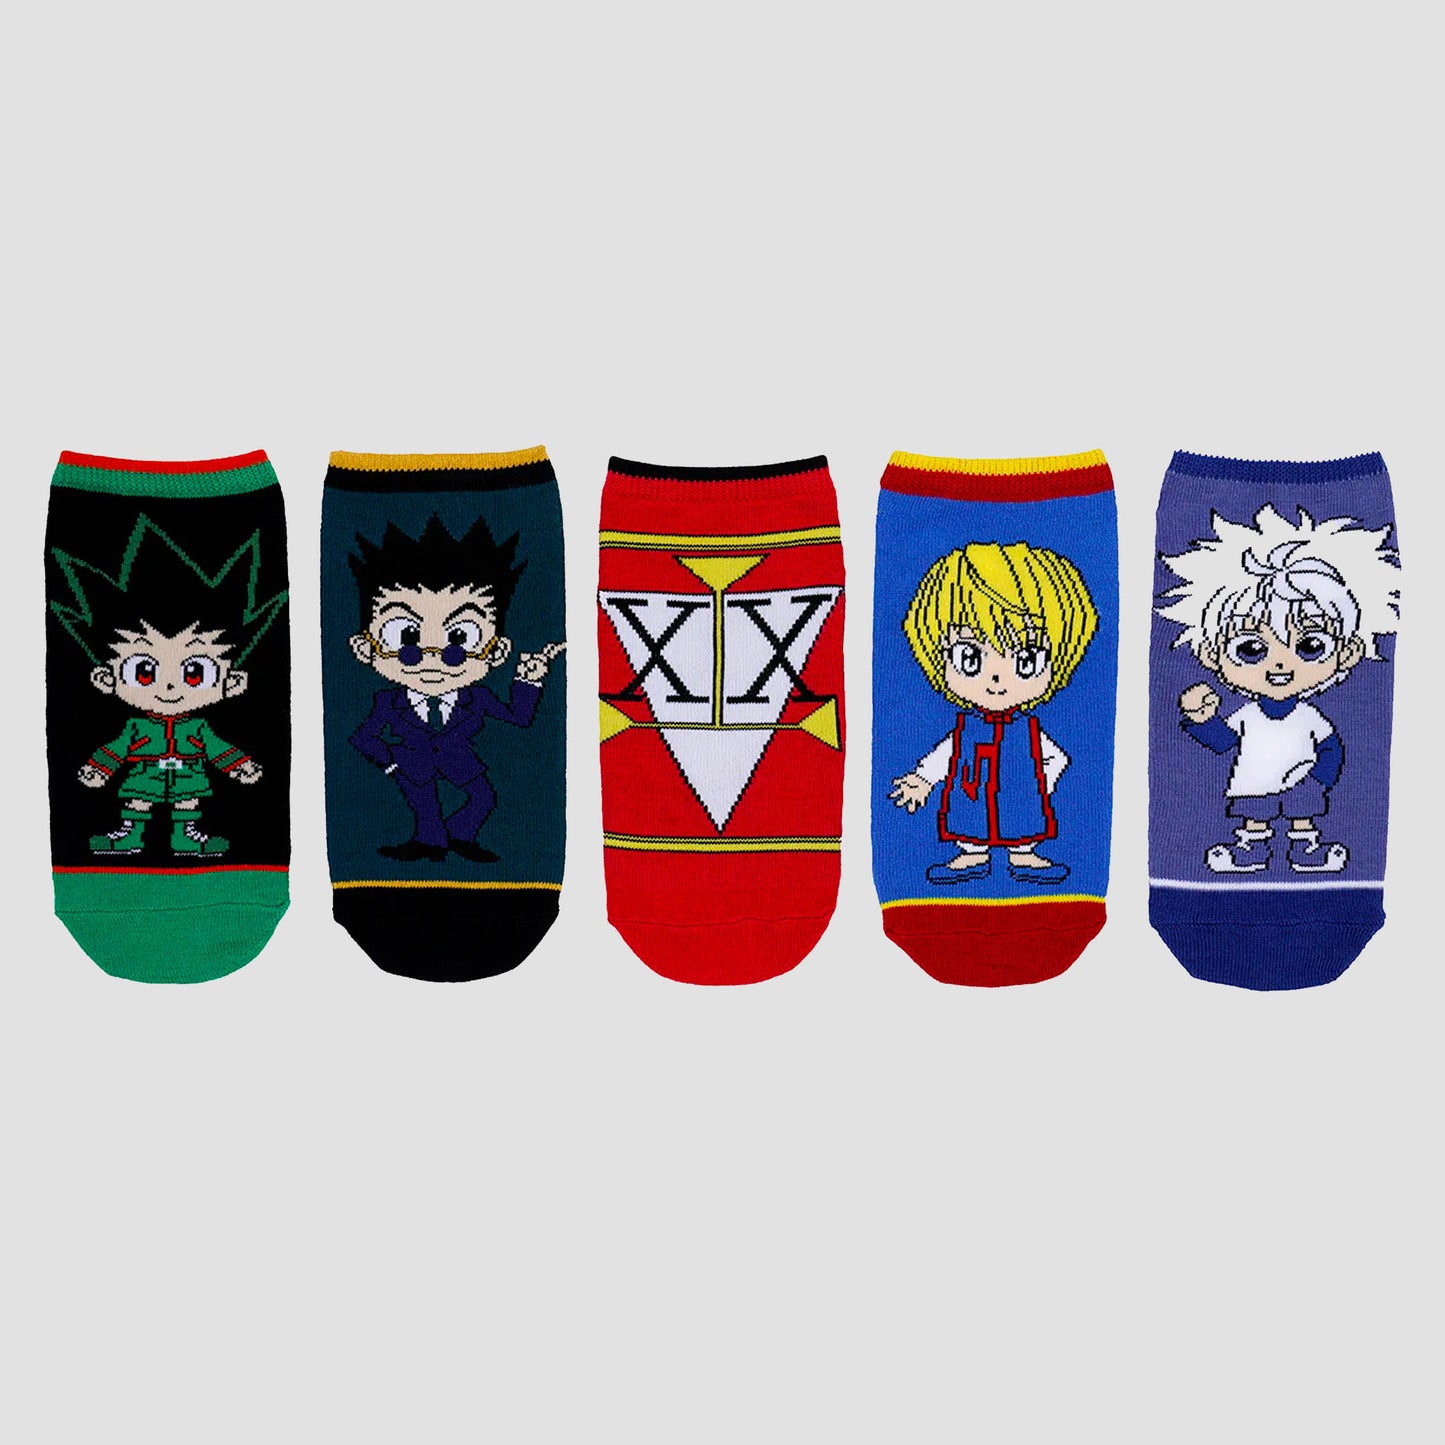 chibi-characters-hunter-x-hunter-ankle-socks-set